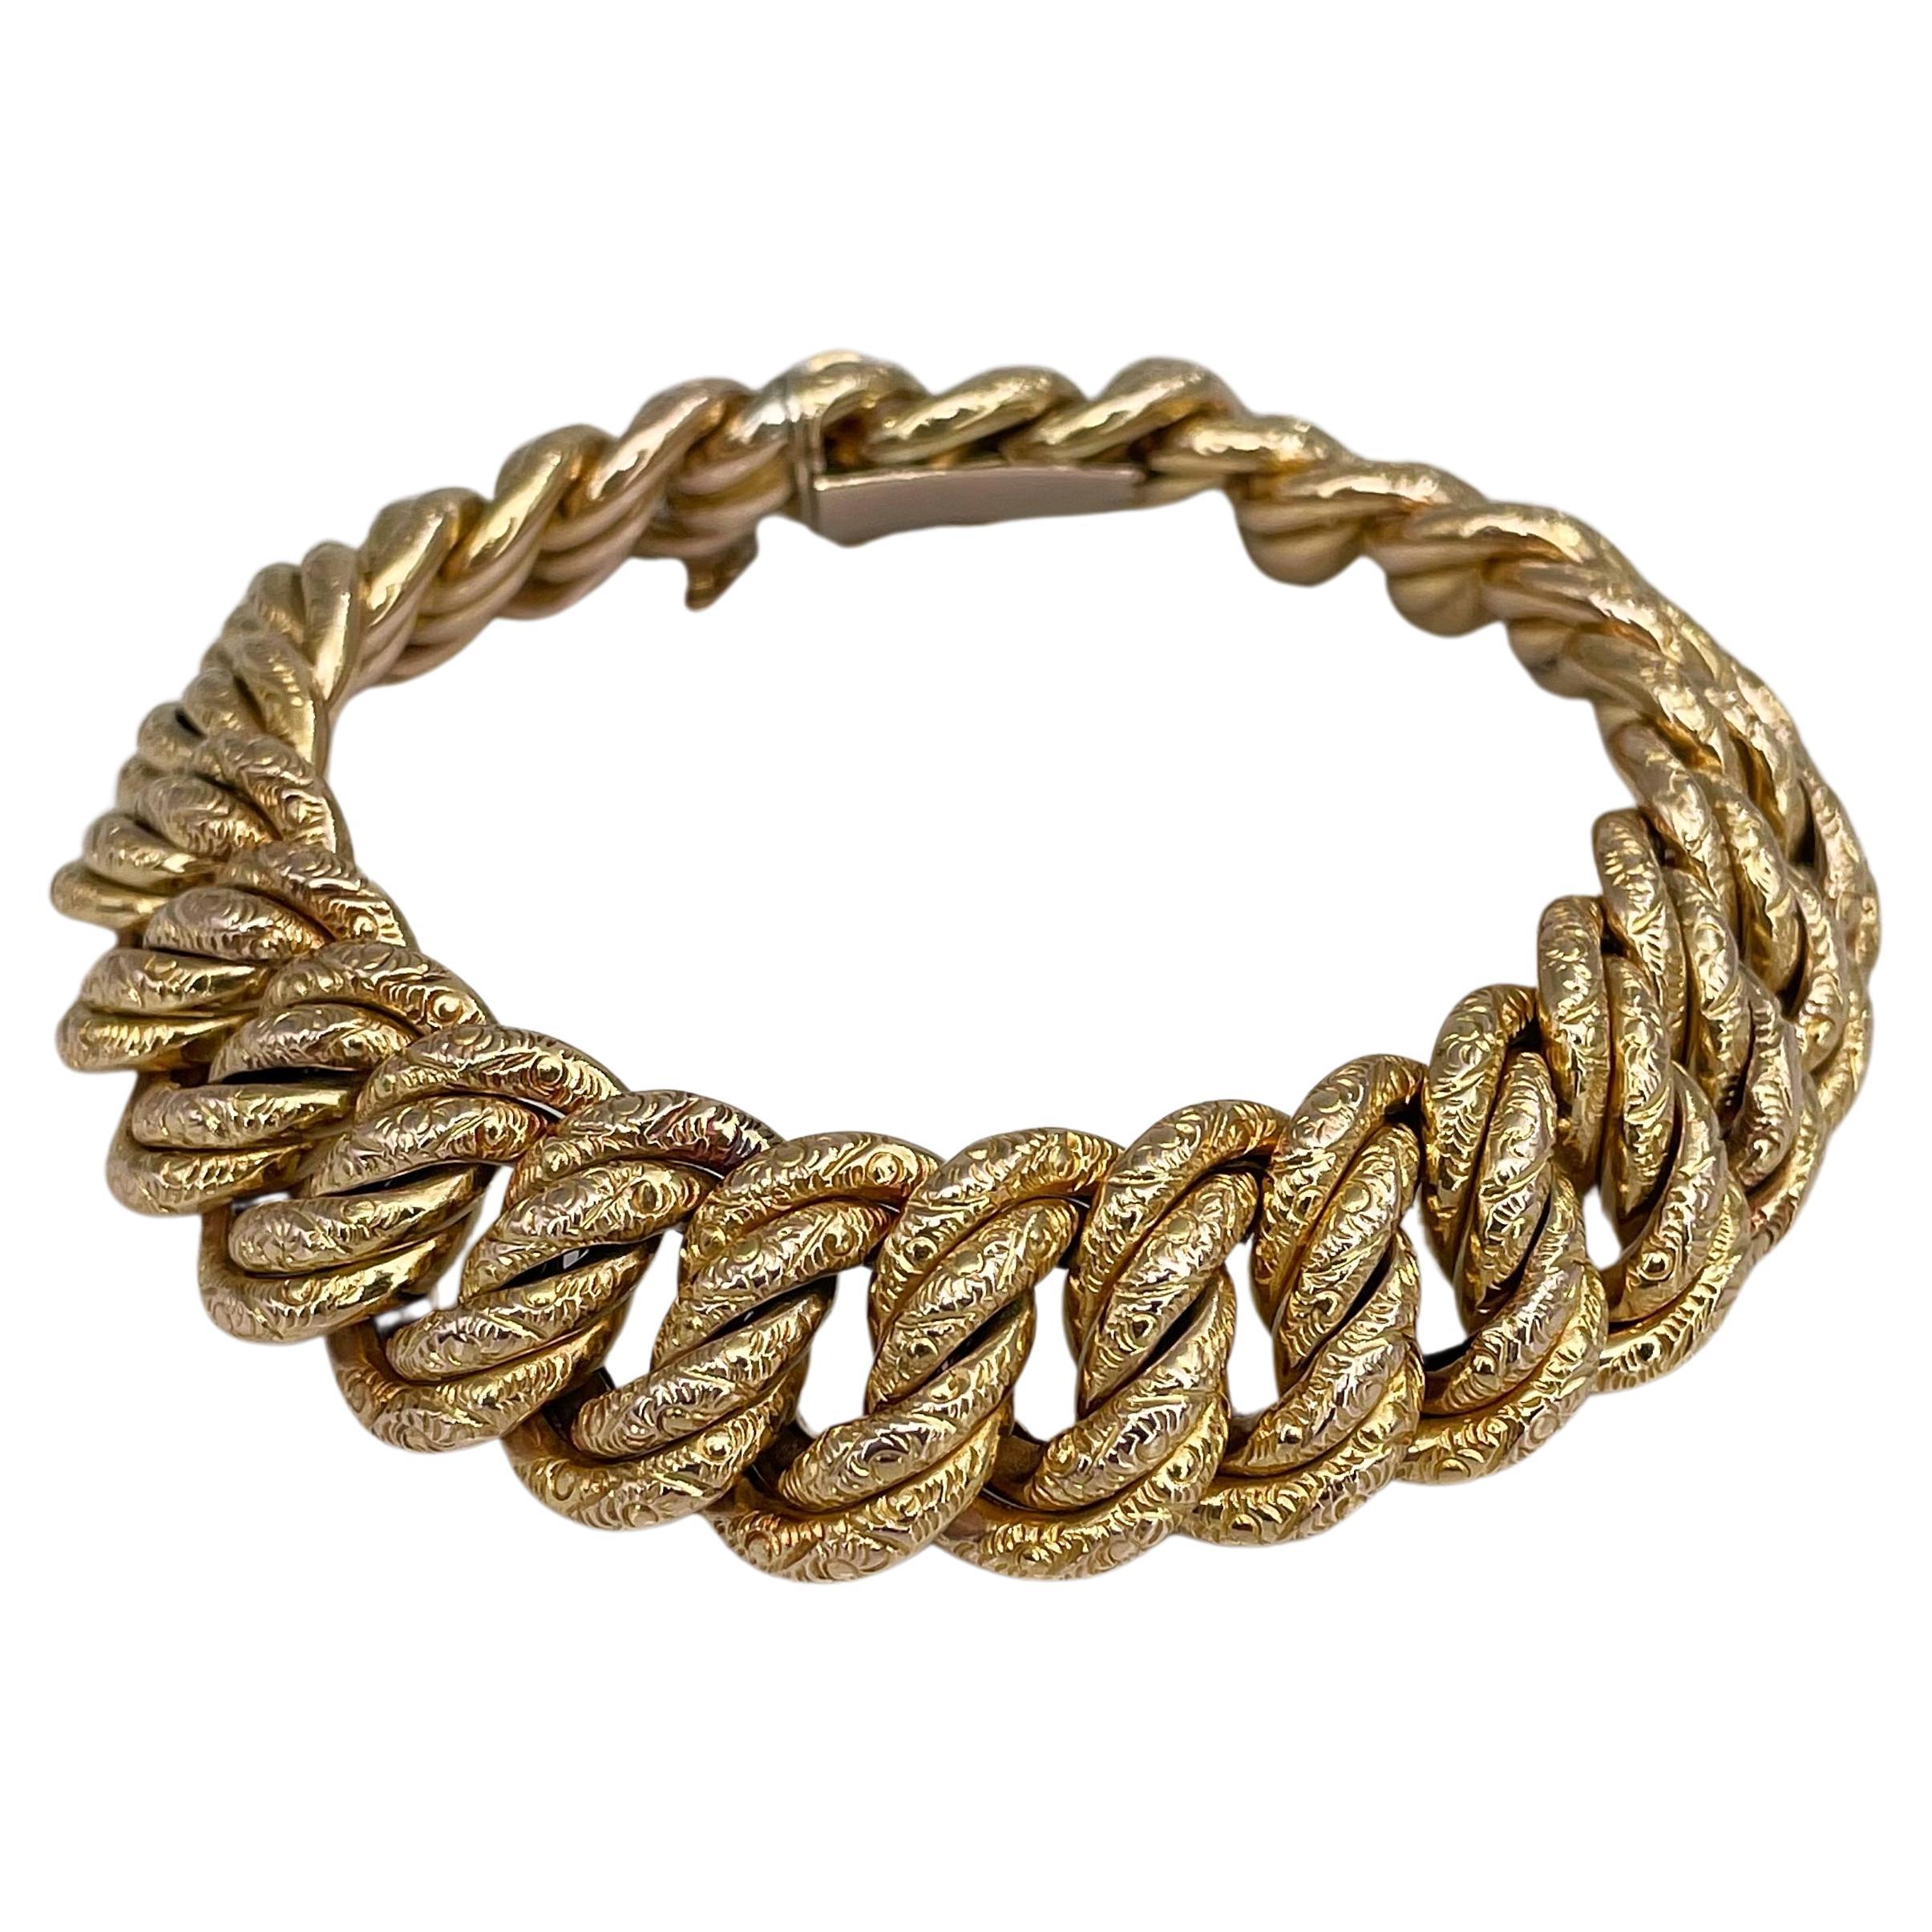 Antique 56 Hallmark Gold Wide Chain Link Bracelet